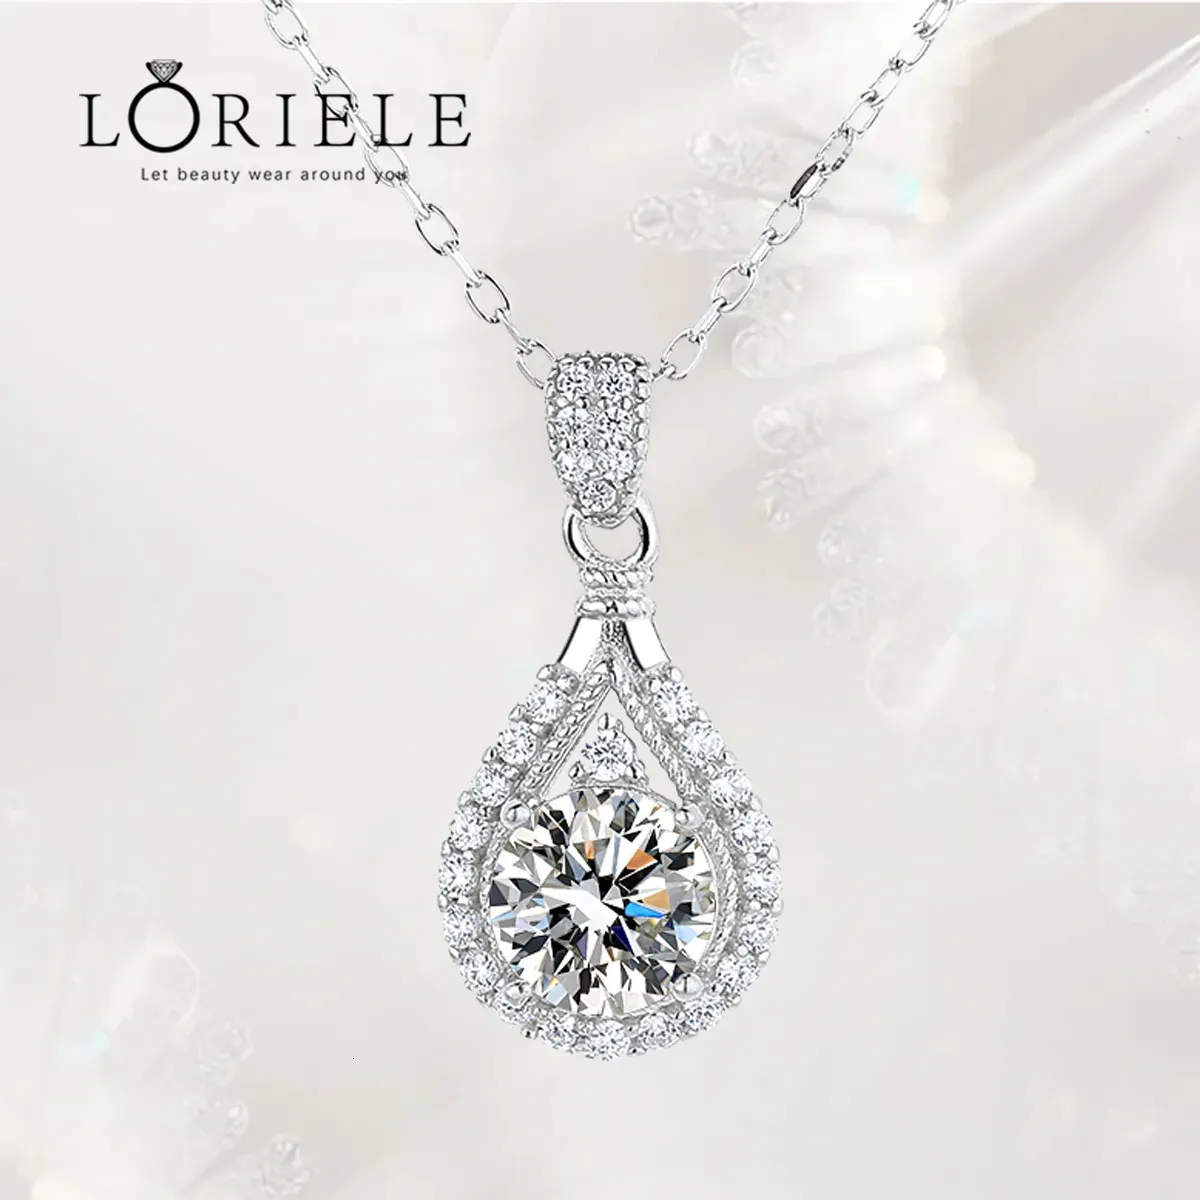 Colares de pingente Loriele 100% colar real para mulheres vvs redondo corte diamante namorada jóias s925 prata esterlina gra 230928